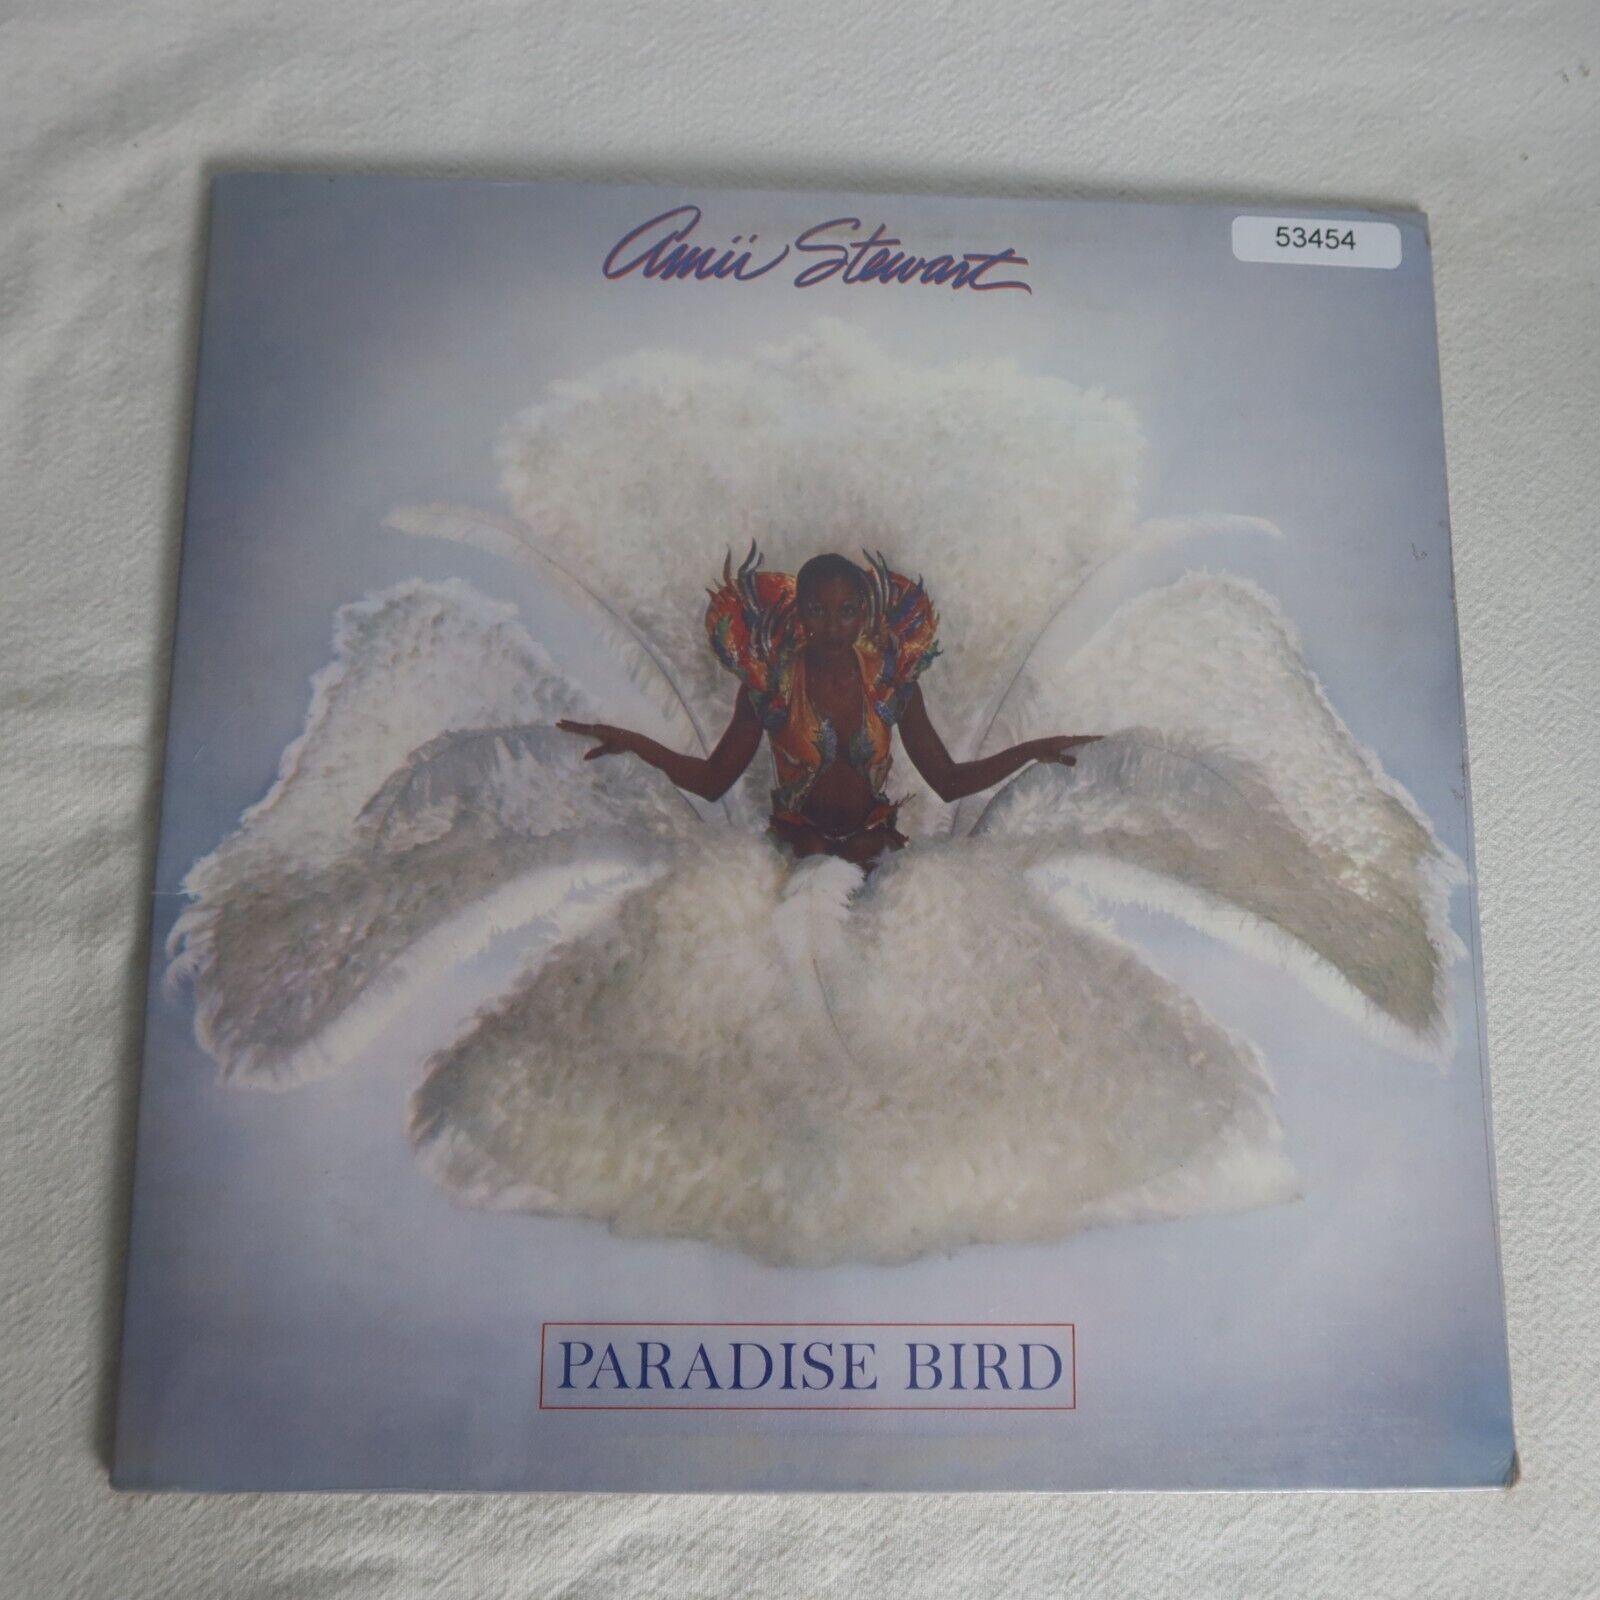 NEW Amii Stewart Paradise Bird w/ Shrink LP Vinyl Record Album